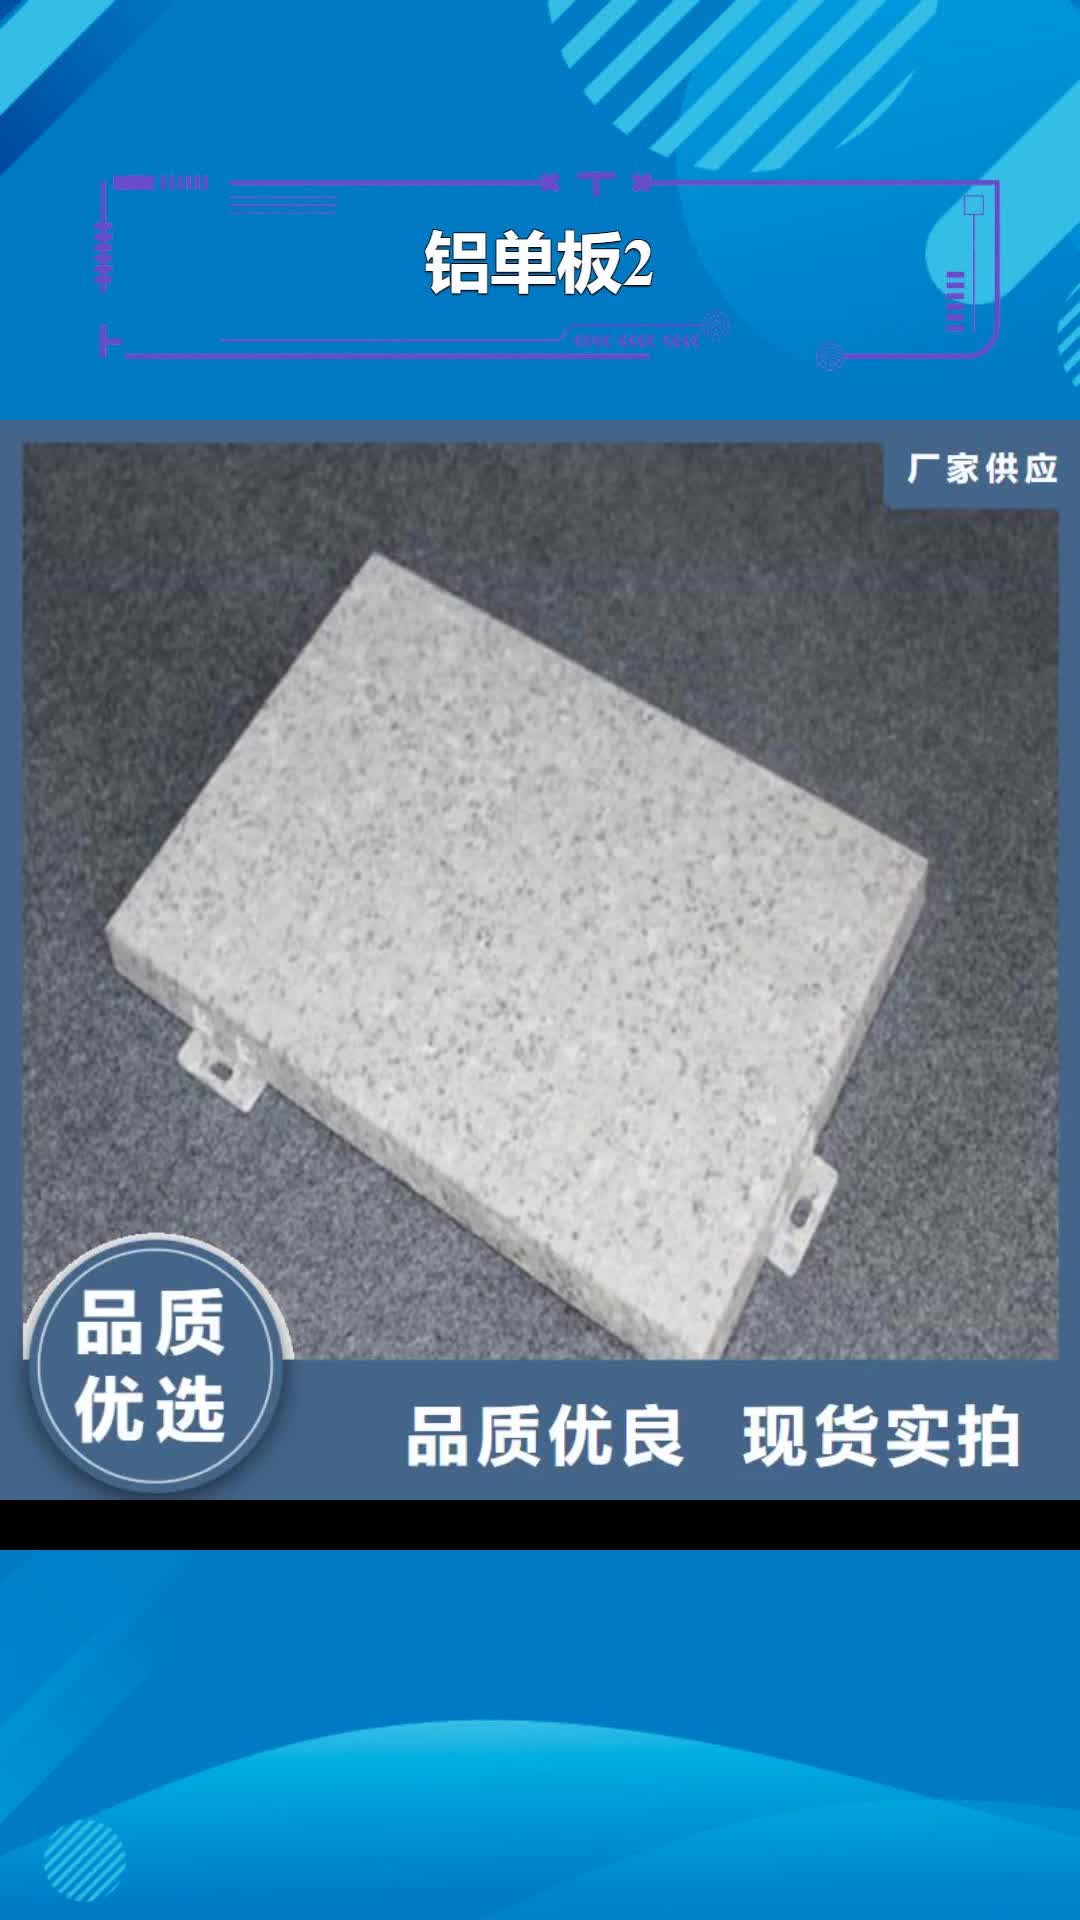 广安 铝单板2-【铝单板厂家】厂家直销安全放心